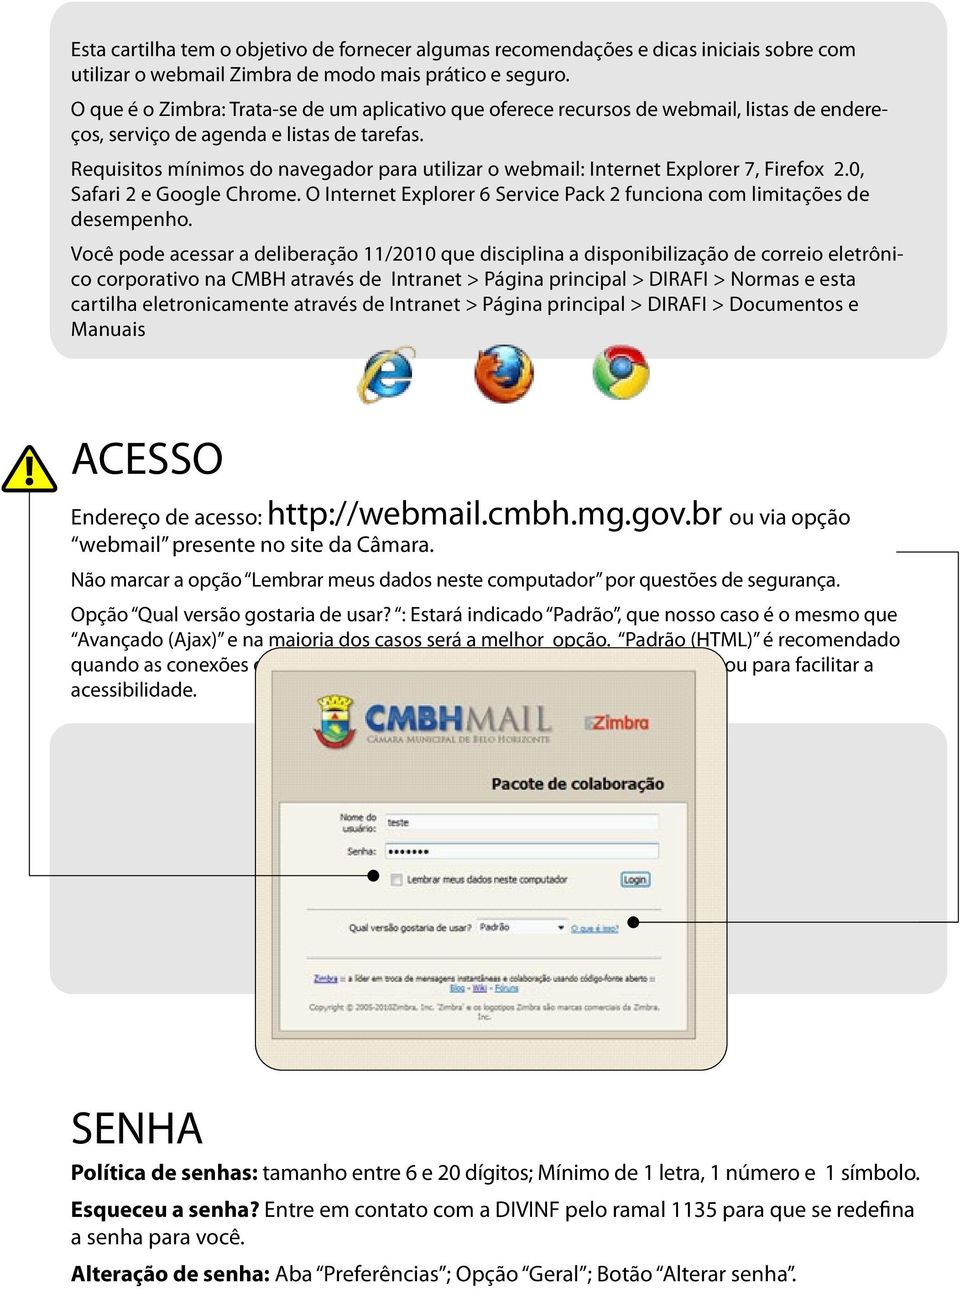 Requisitos mínimos do navegador para utilizar o webmail: Internet Explorer 7, Firefox 2.0, Safari 2 e Google Chrome. O Internet Explorer 6 Service Pack 2 funciona com limitações de desempenho.